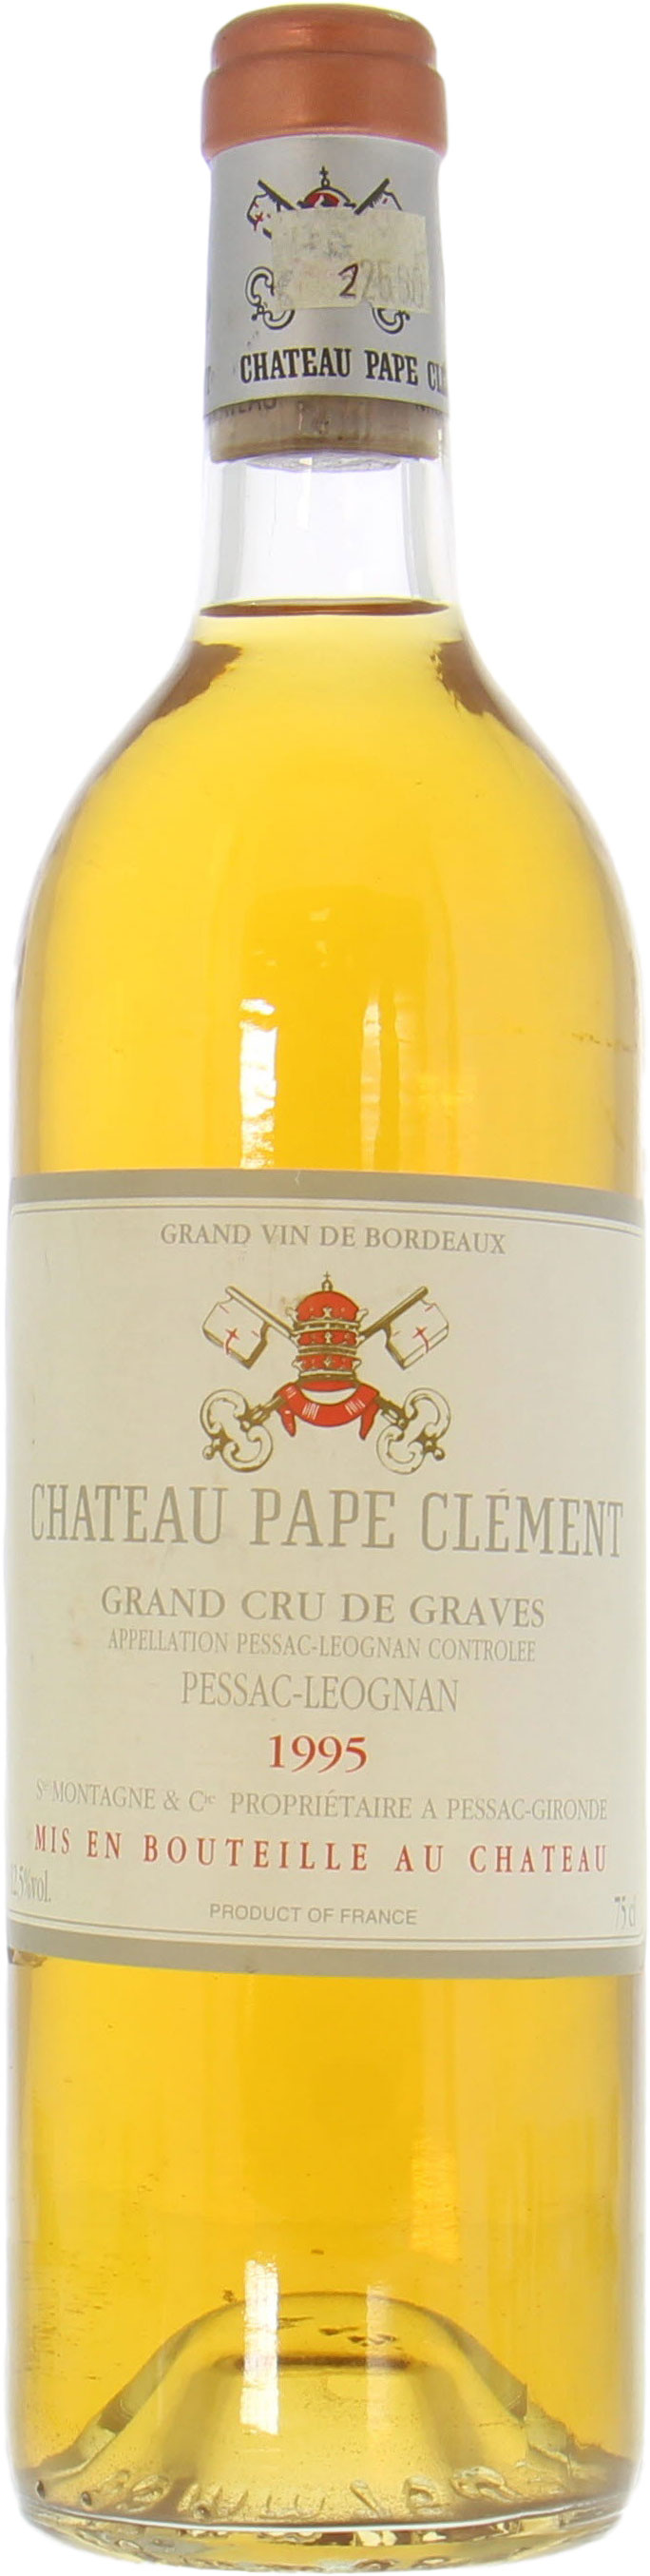 Chateau Pape Clement Blanc - Chateau Pape Clement Blanc 1995